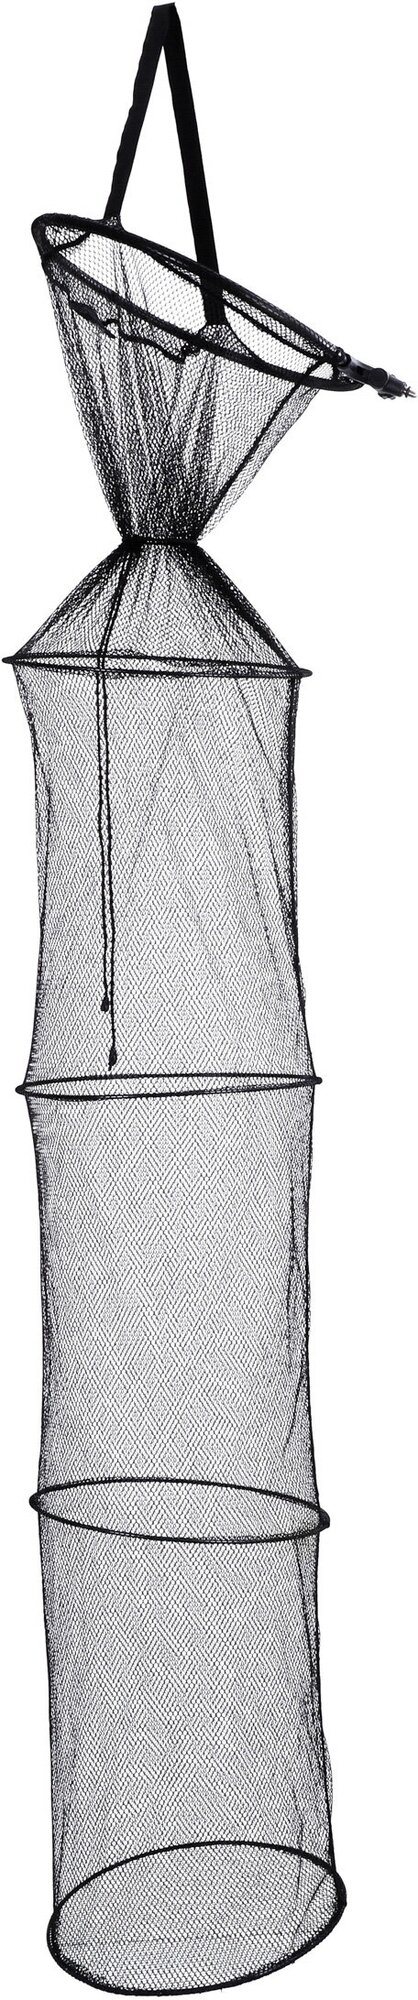 Садок рыболовный Mikado с металлическими обручами и раскладной под колышек 40/35 см x 200 см S17-4035-200